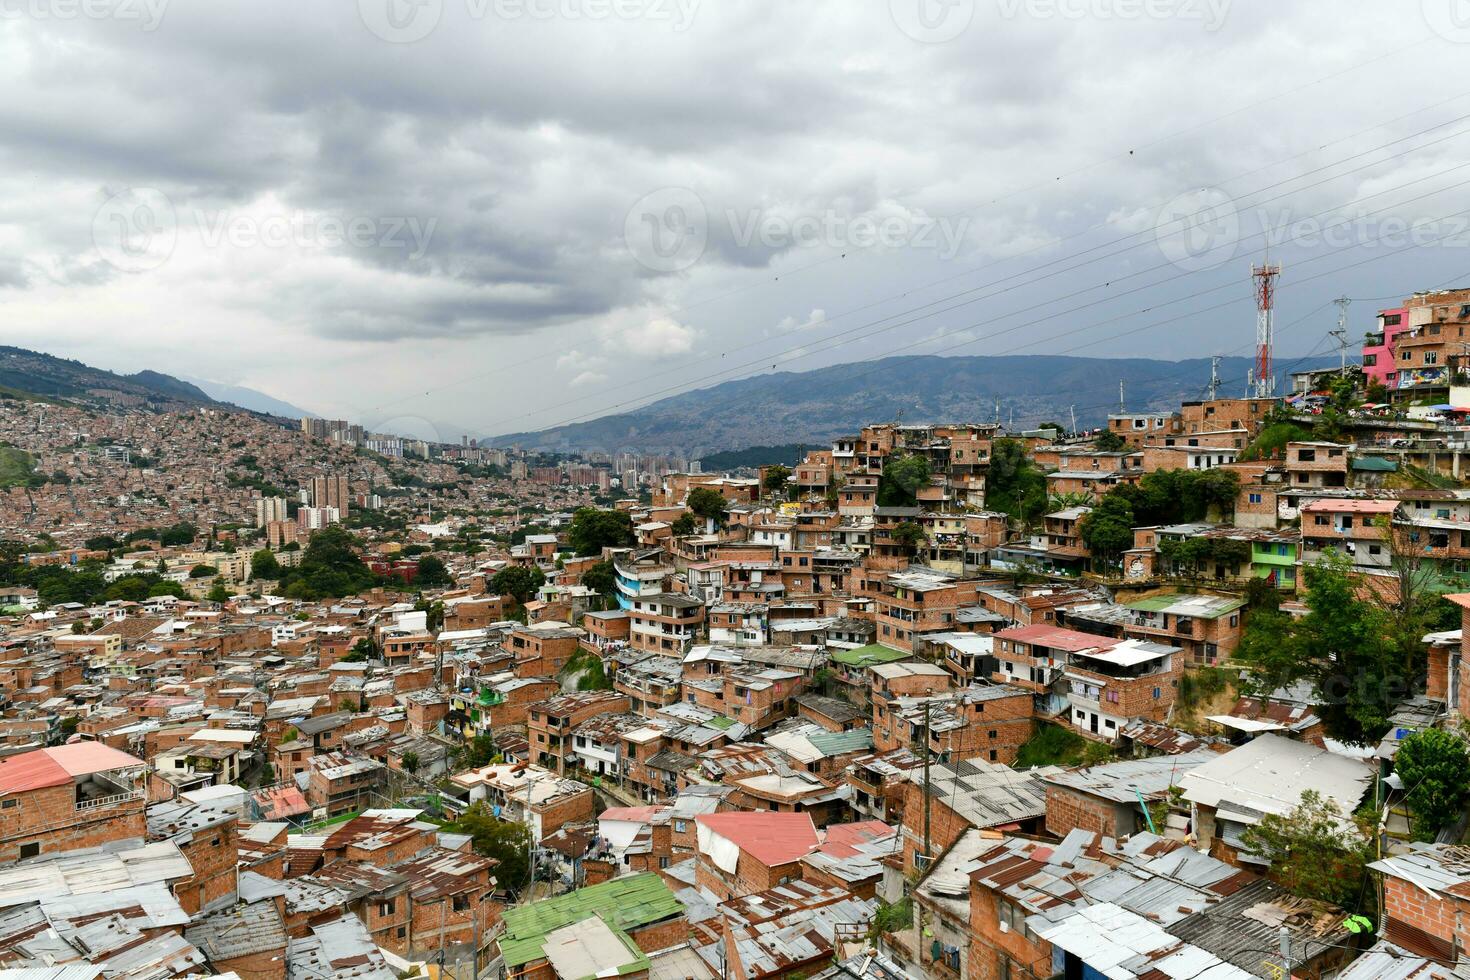 Comuna 13 - Medellin, Colombia photo